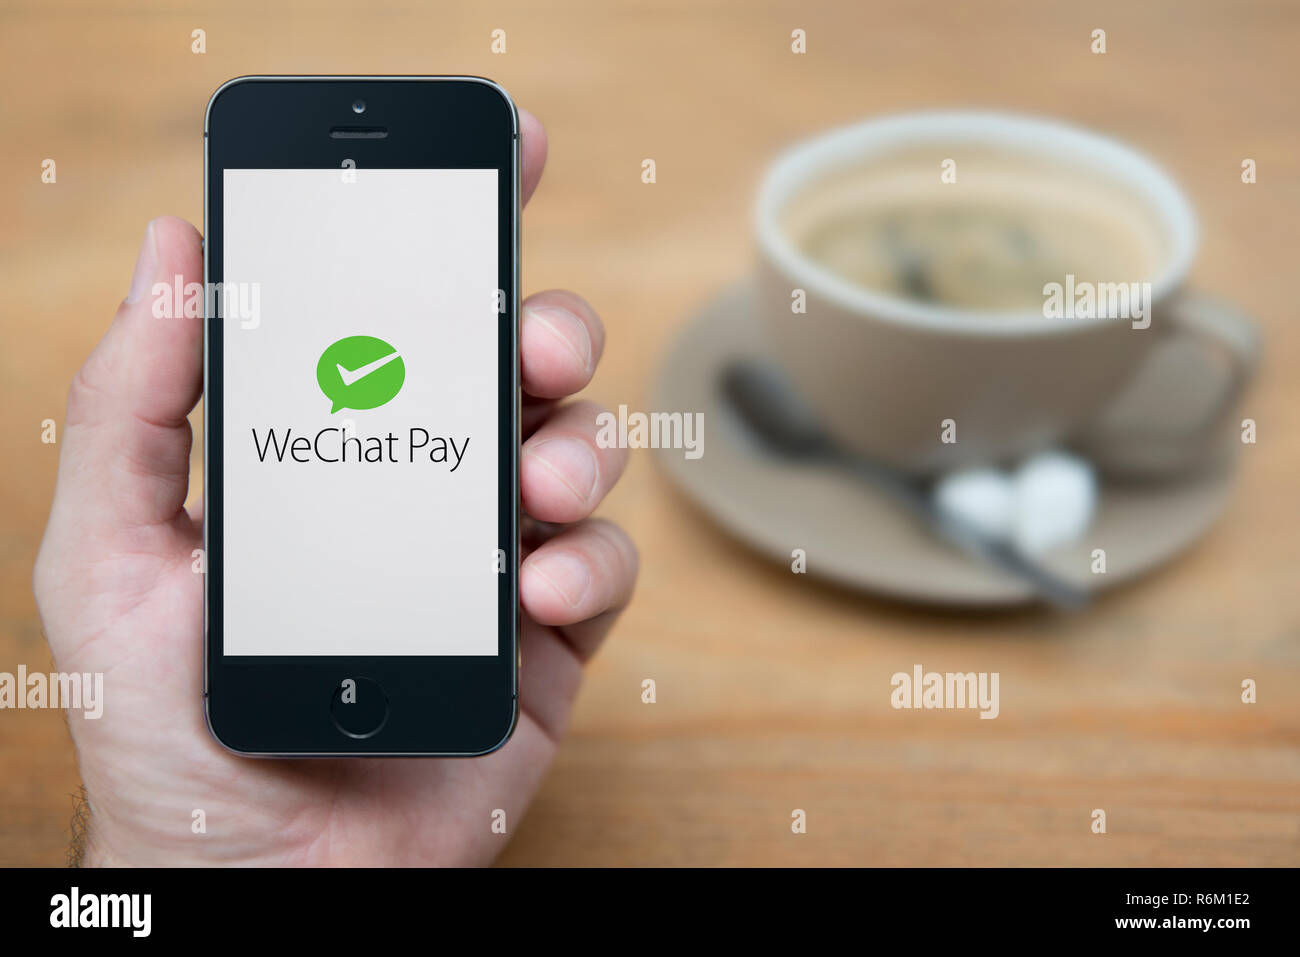 Un hombre mira el iPhone que muestra el logotipo de pago WeChat (uso Editorial solamente). Foto de stock